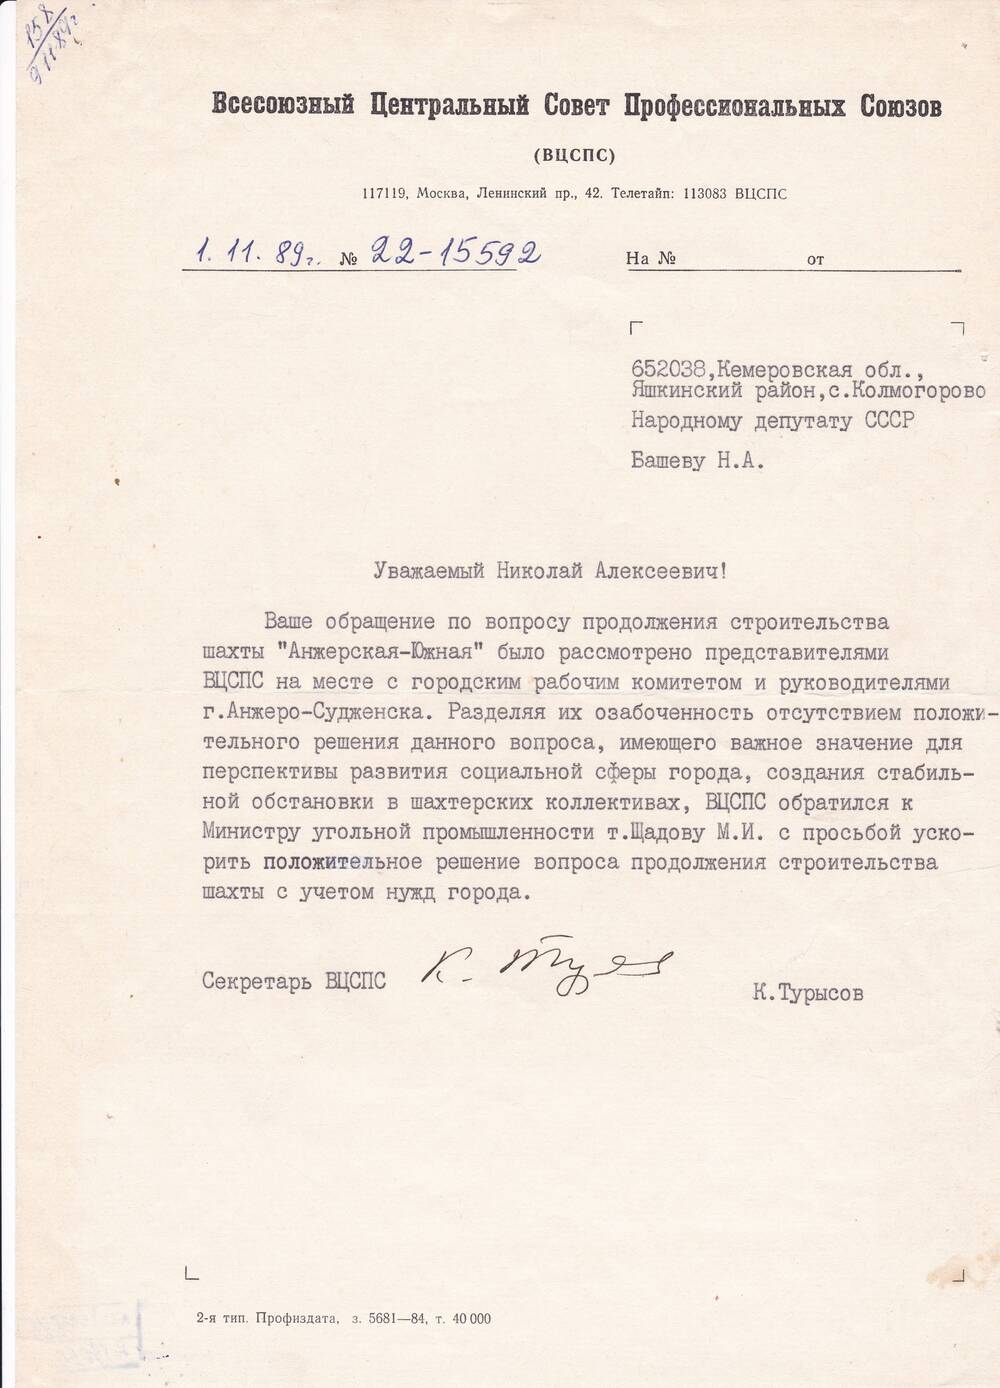 Ответ Секретаря ВЦ СПС К.Турысова на запрос депутата Башева Н.А.  от 01.11.1989 г.